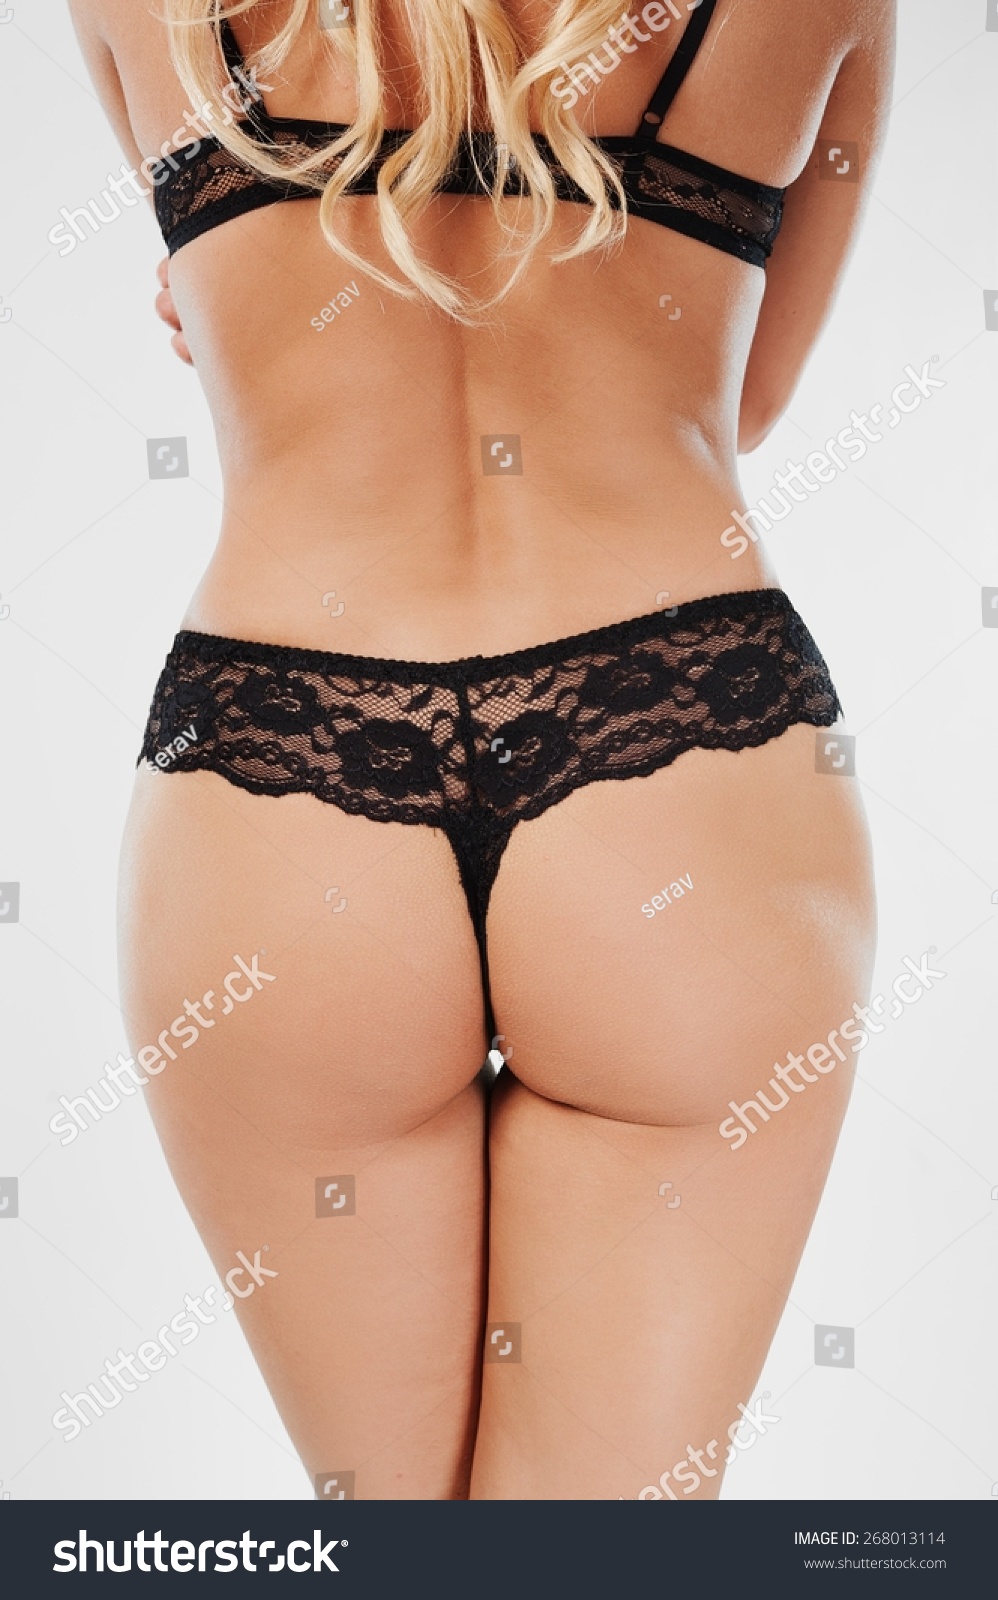 Beautiful Ass Panties Pictures